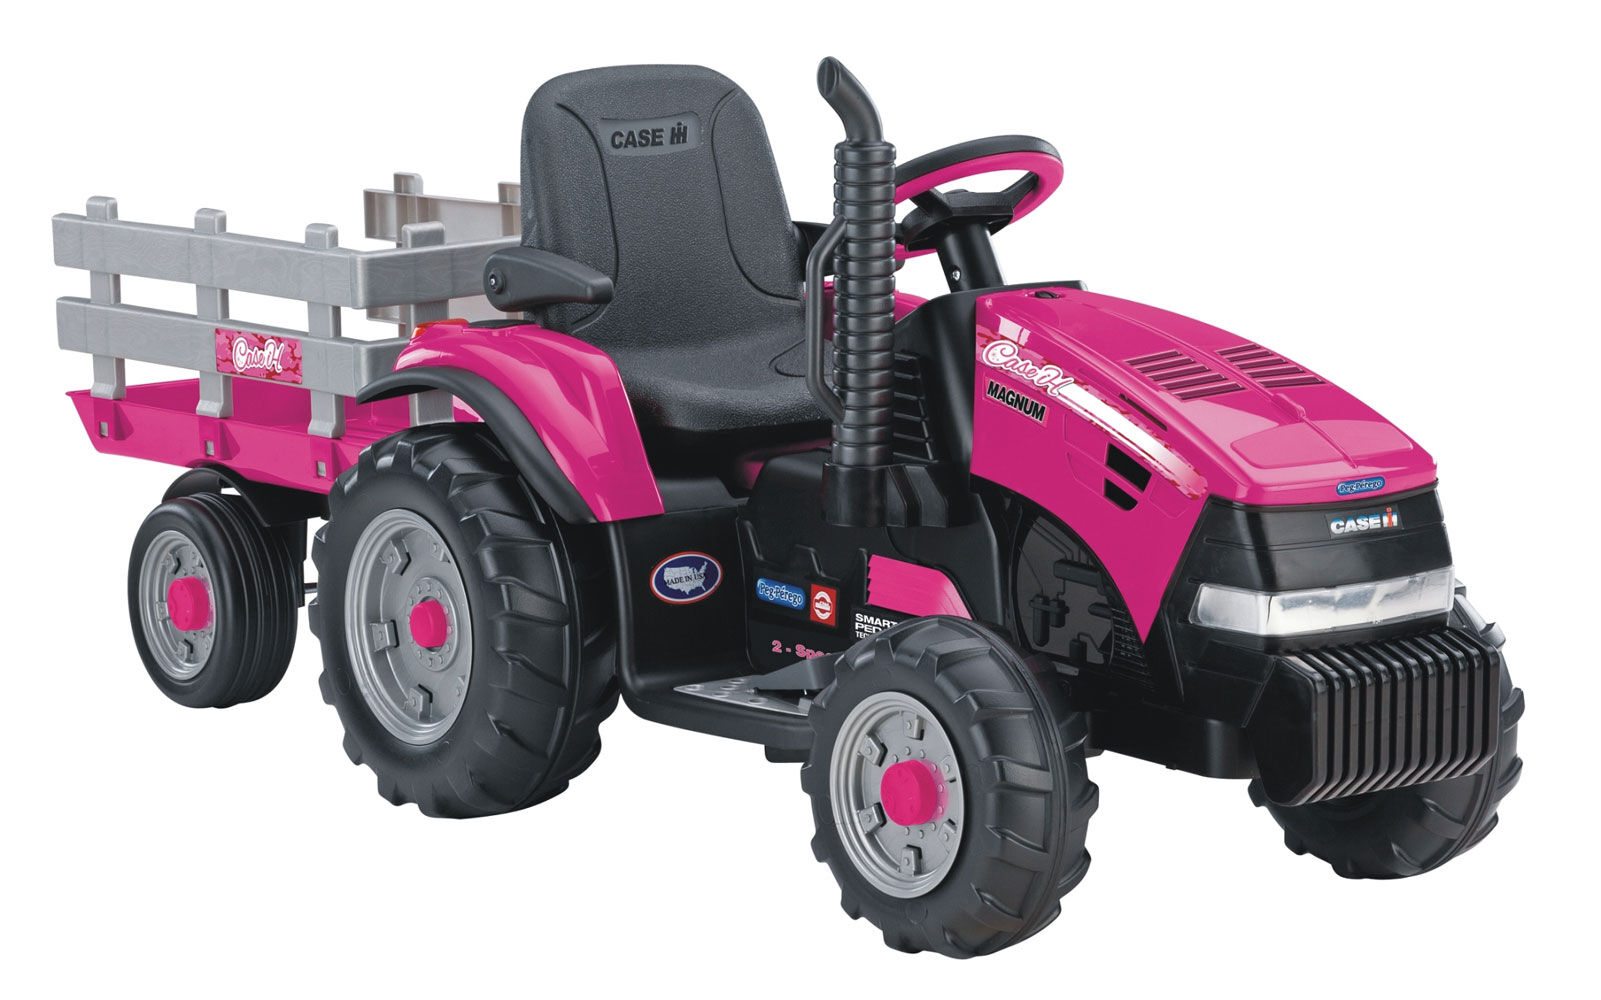 tracteur rose jouet